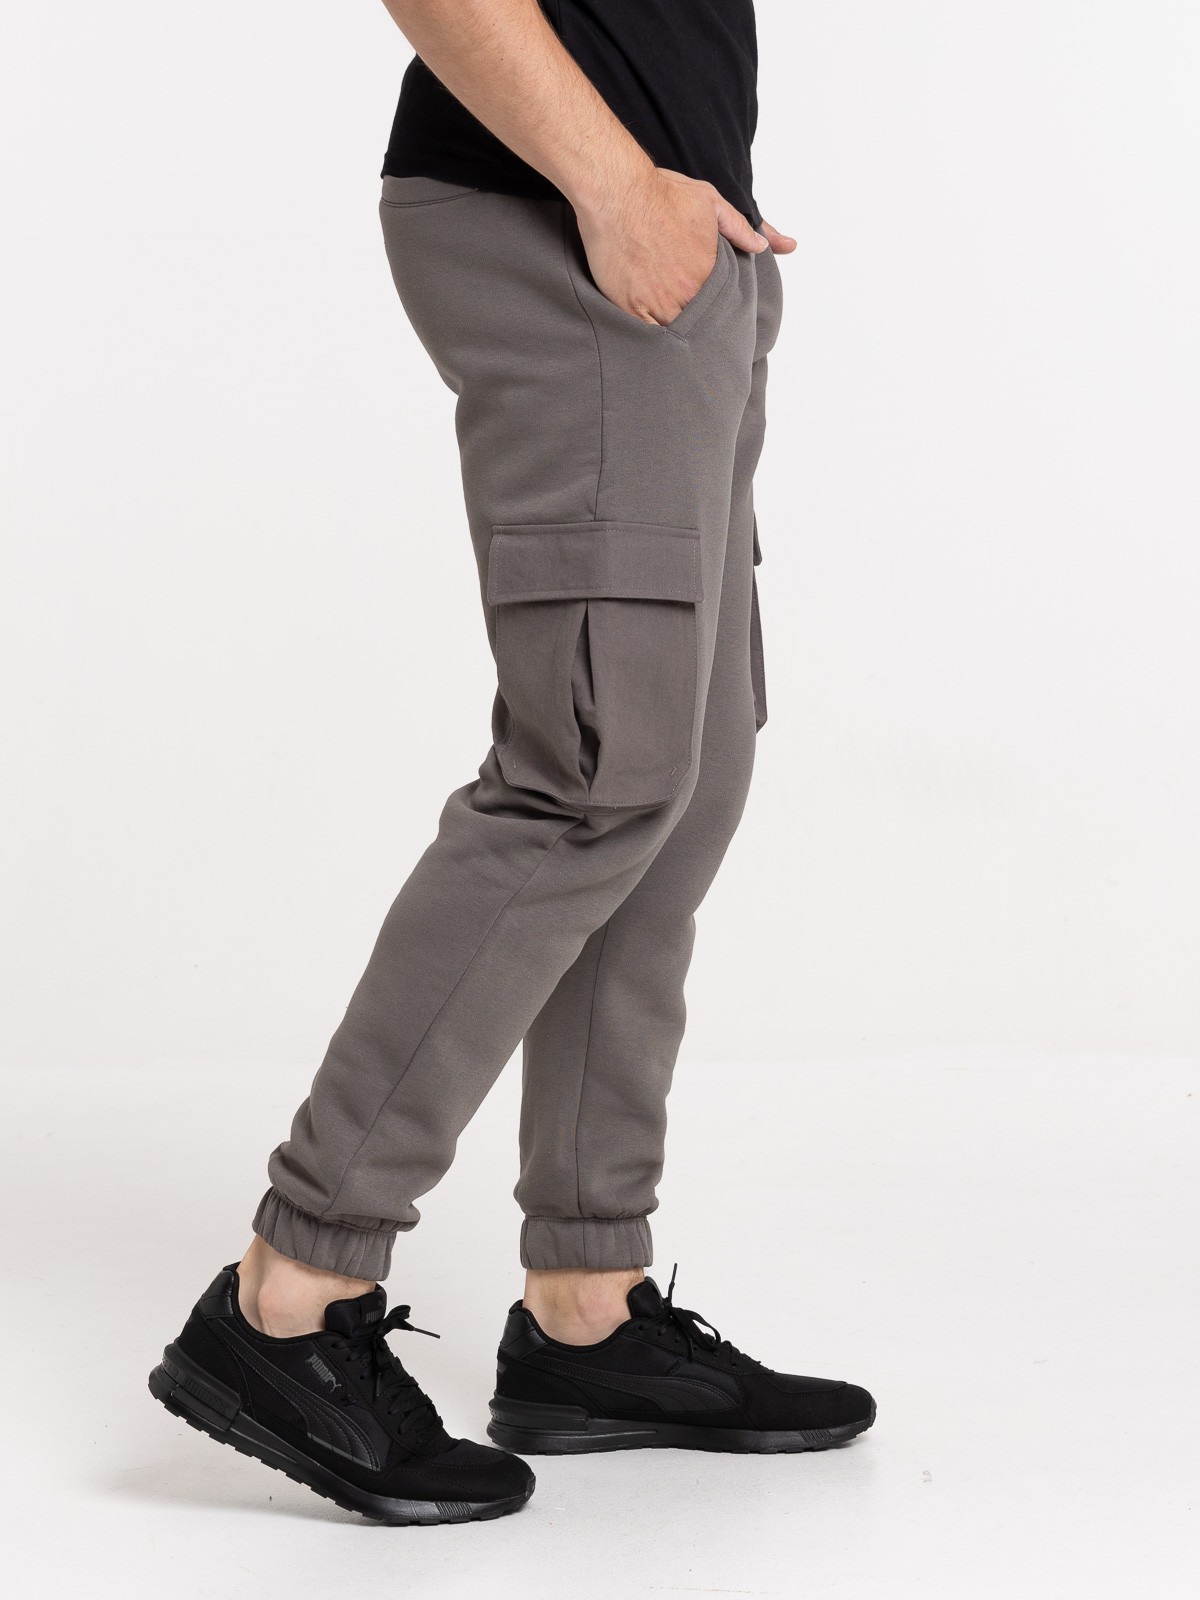 Vêtement travail Homme gris taille 40 - DistriCenter